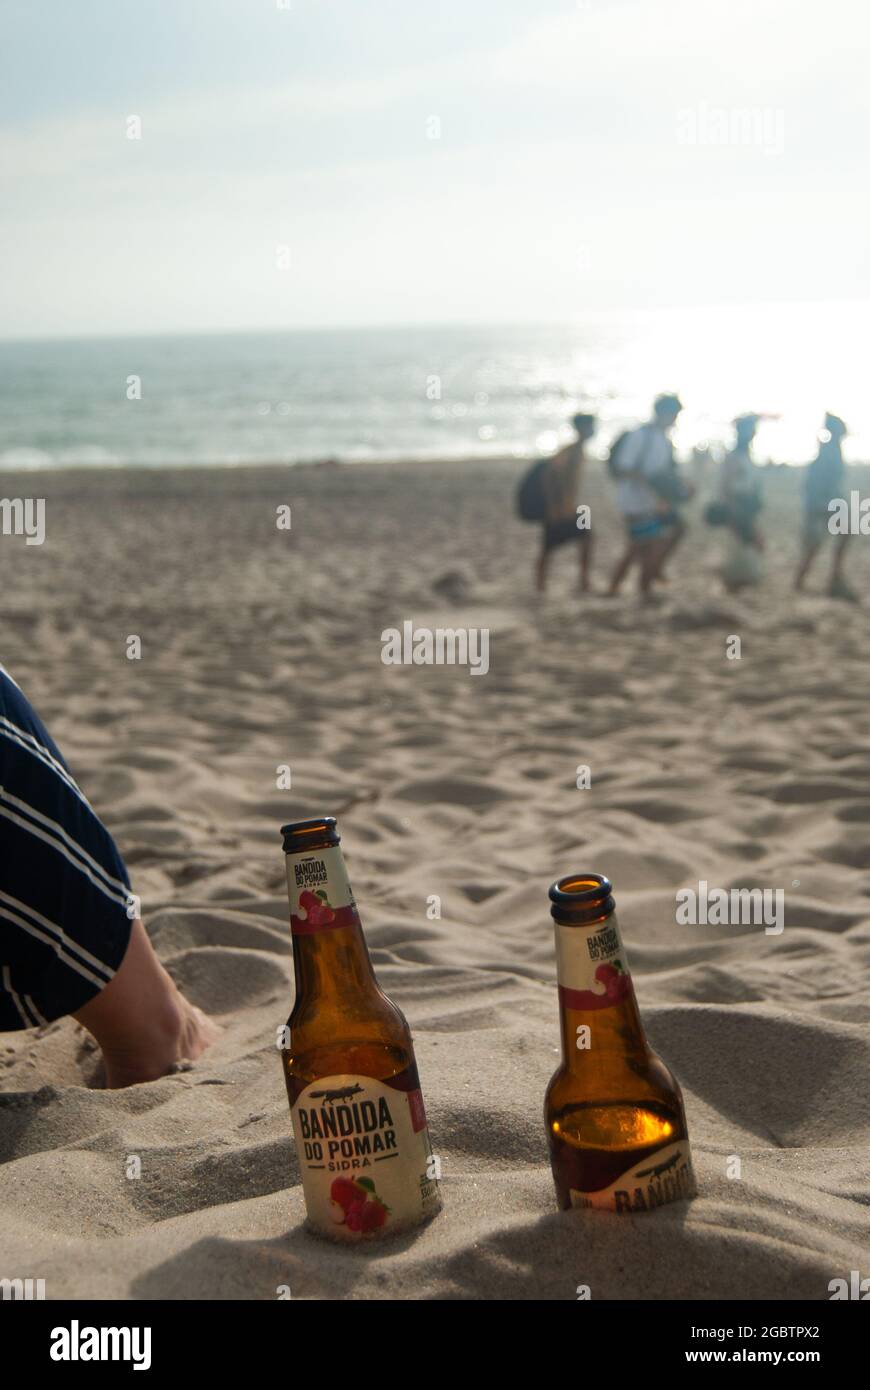 Bandida do Pomar bouteilles de cidre creusées dans le sable à la plage, Portugal - Costa Nova Beach, Aveiro, 10.06.2021 Banque D'Images